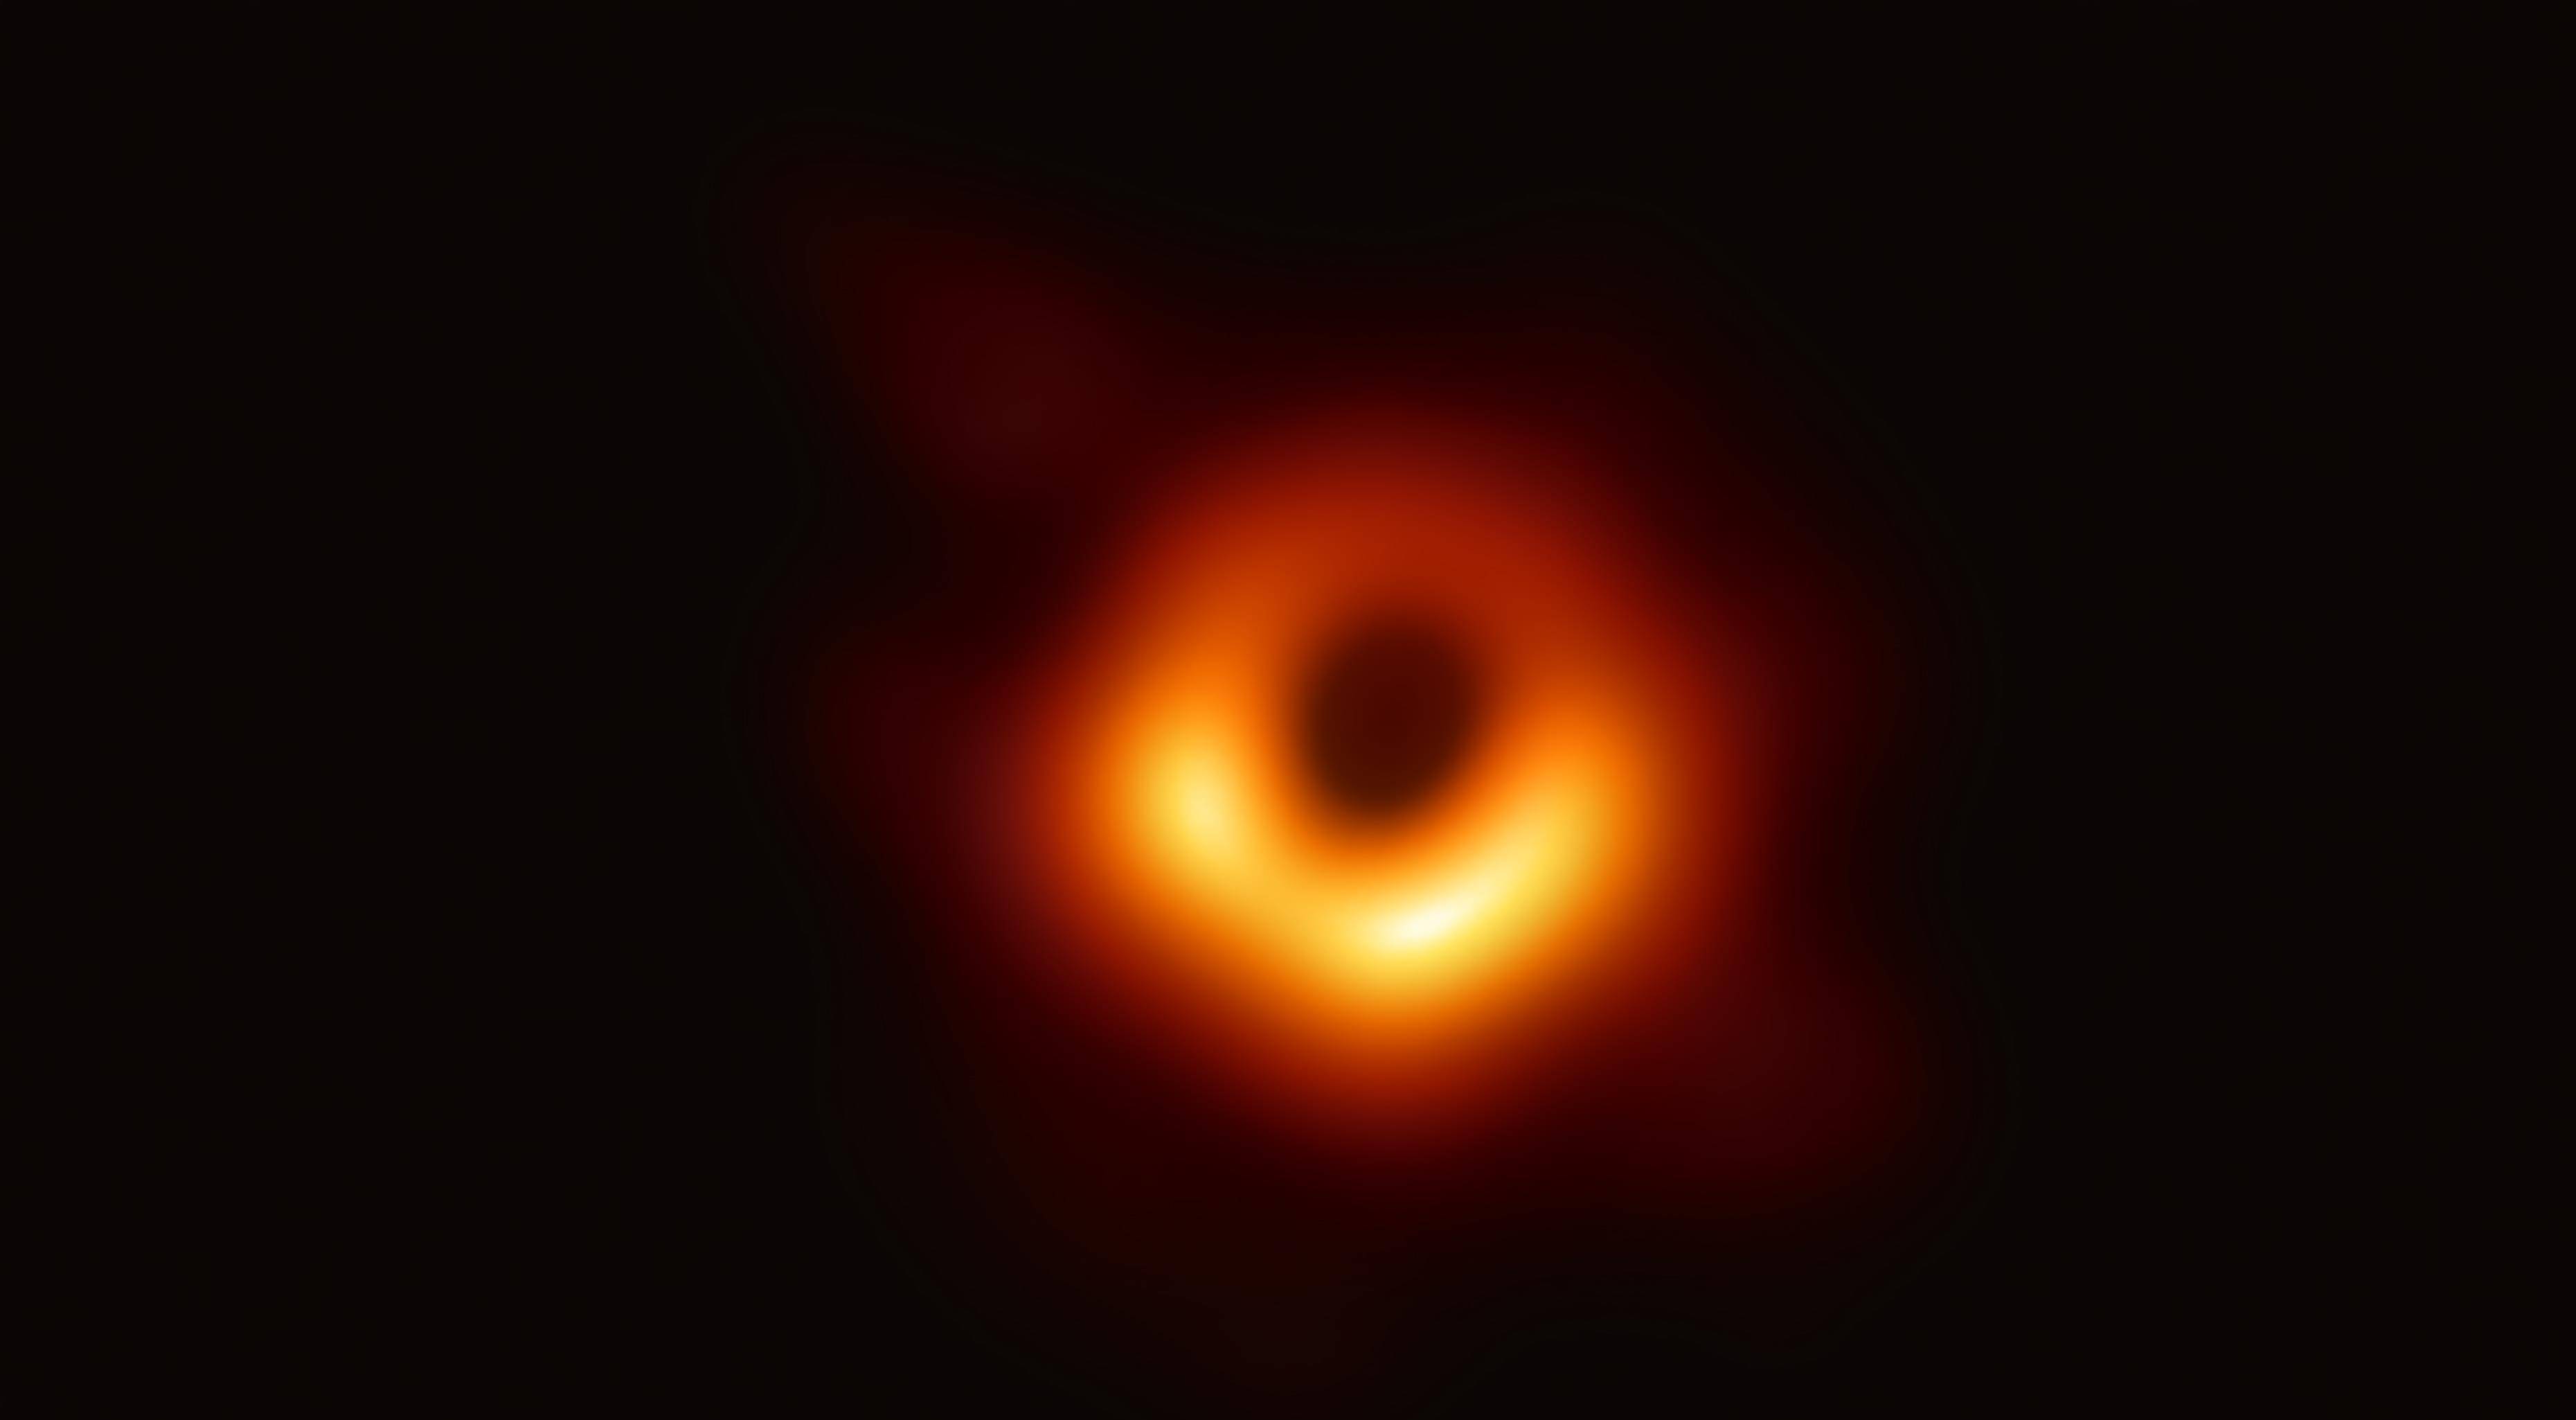 黑洞或许并不能摧毁吞噬一切，它可能是通往另一平行宇宙的入口？